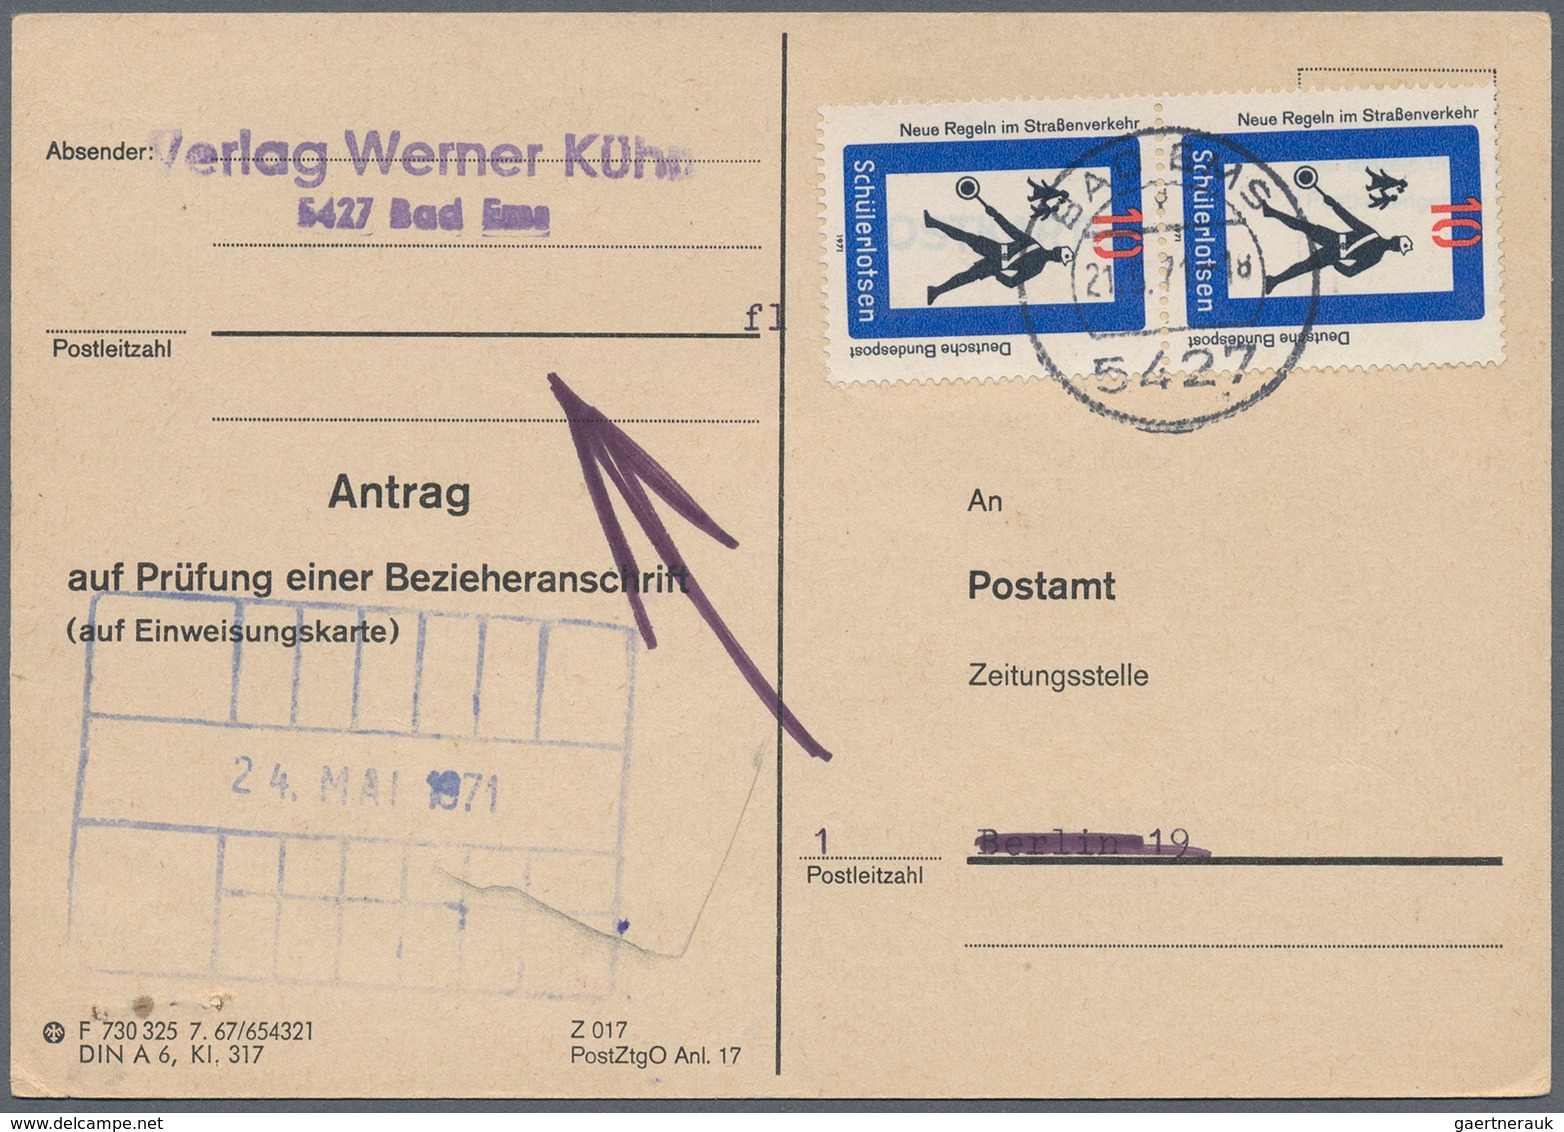 32662 Bundesrepublik Deutschland: 1948/85 (ca.), Posten von ca. 60 aussergewöhnlichen ehemaligen Einzellos